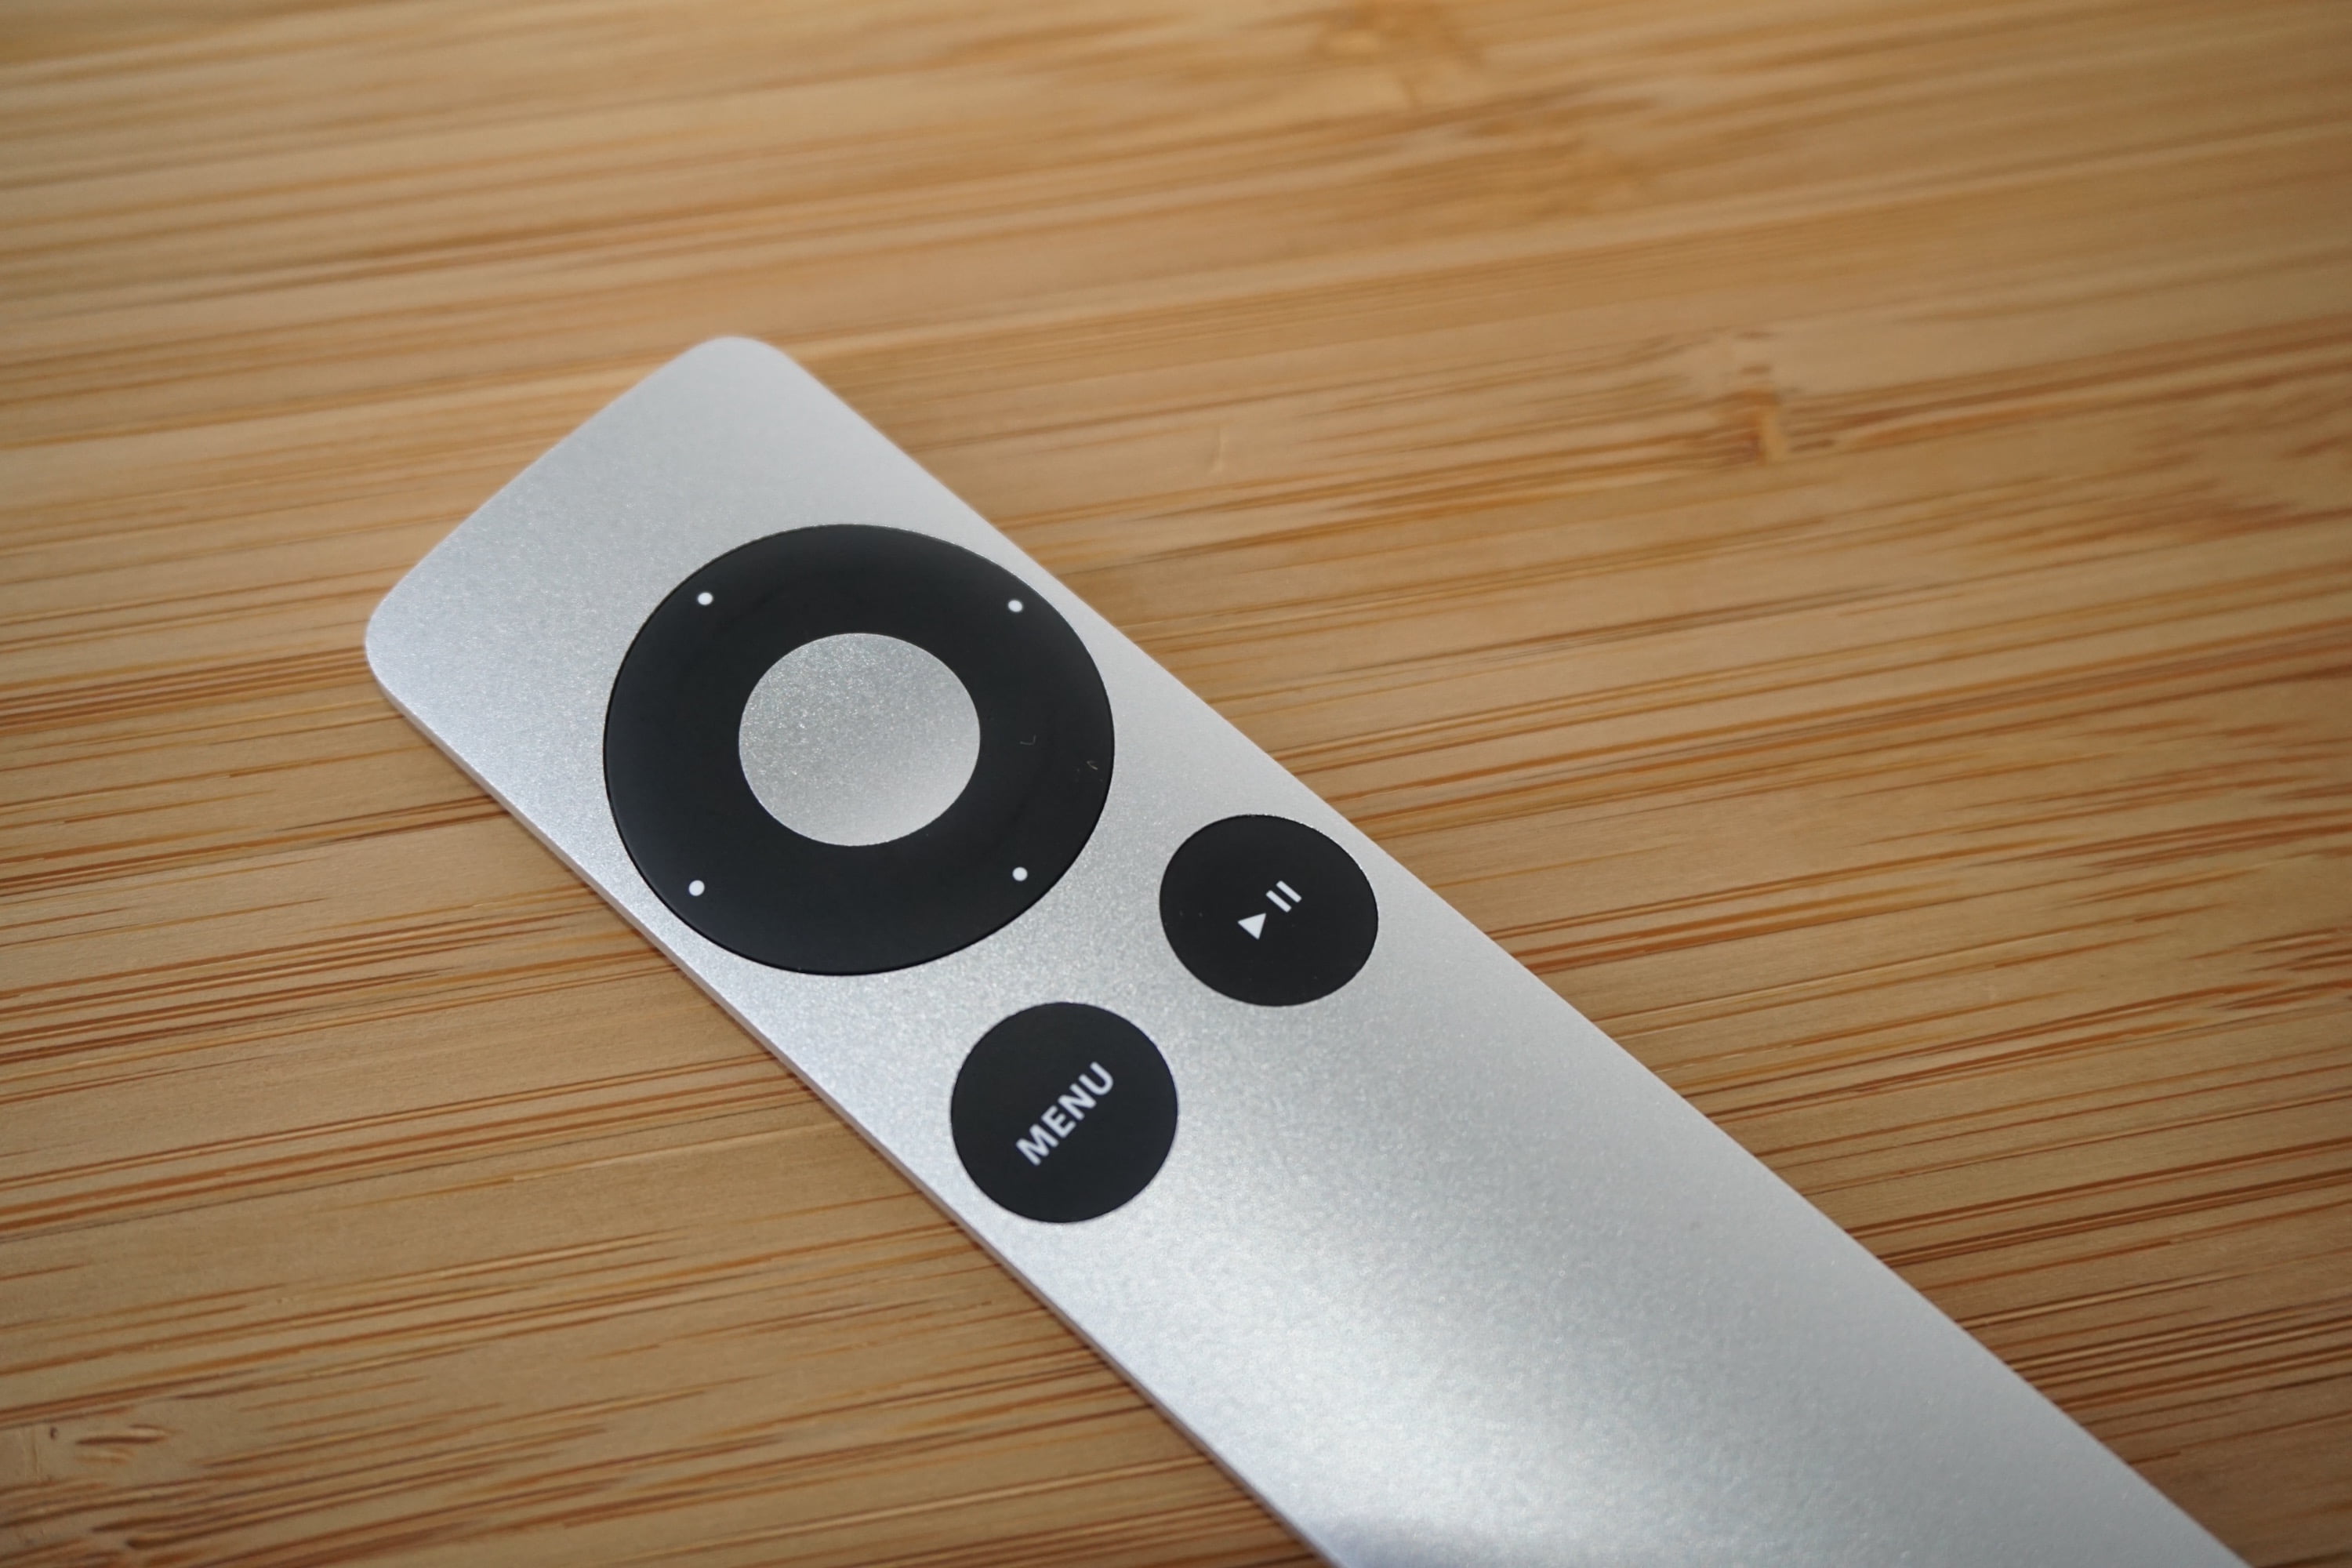 Review: Die Apple Remote im Test. Die Infrarot IR Version.